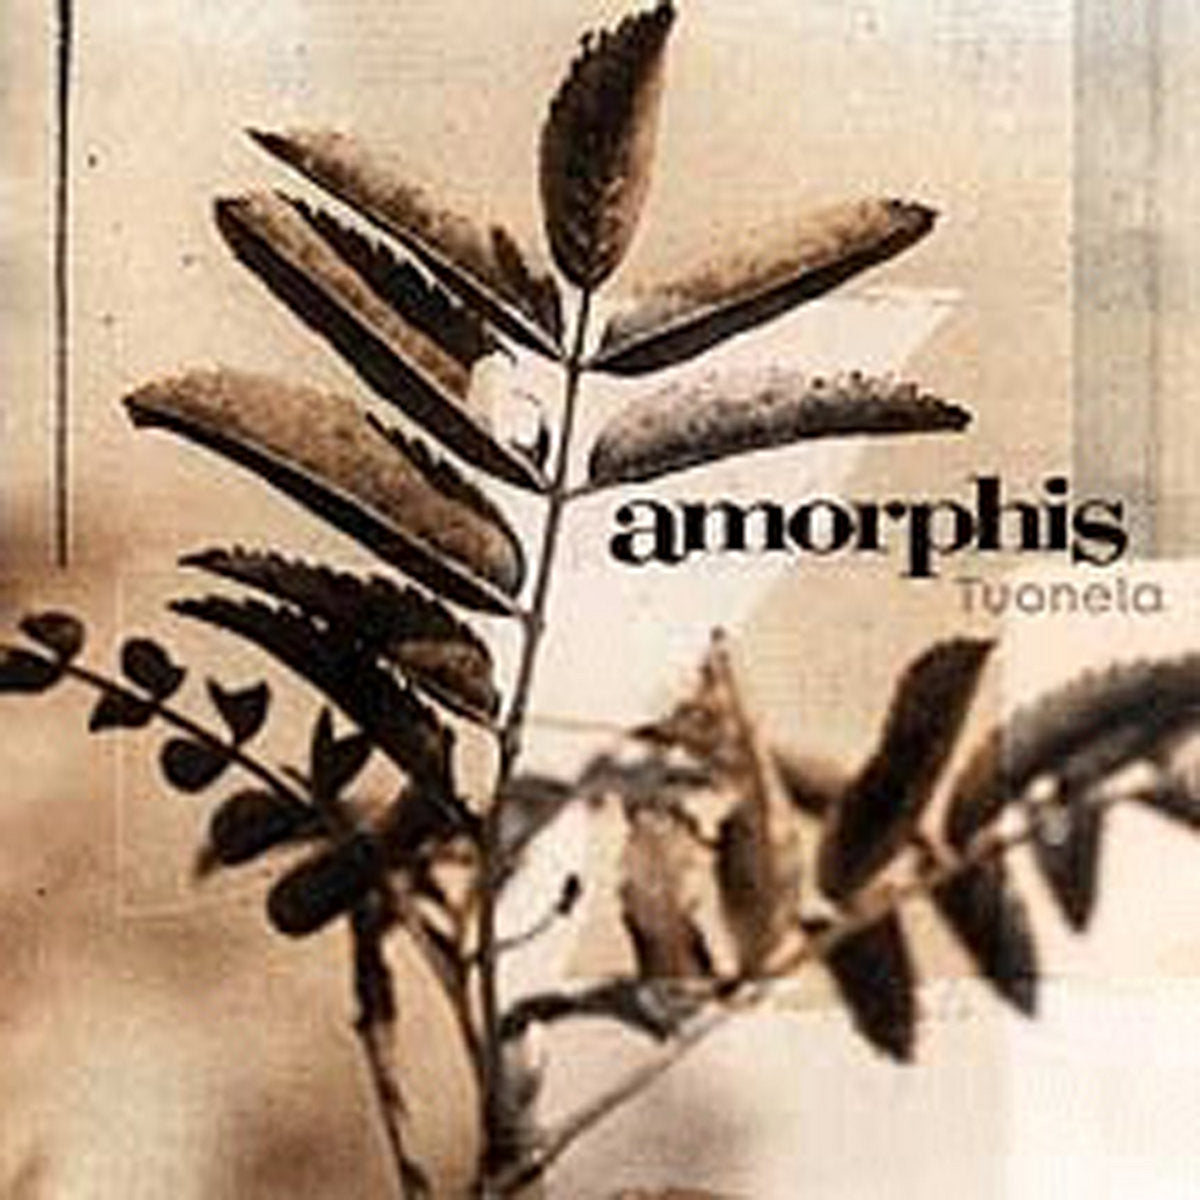 Amorphis "Tuonela" 12" Vinyl